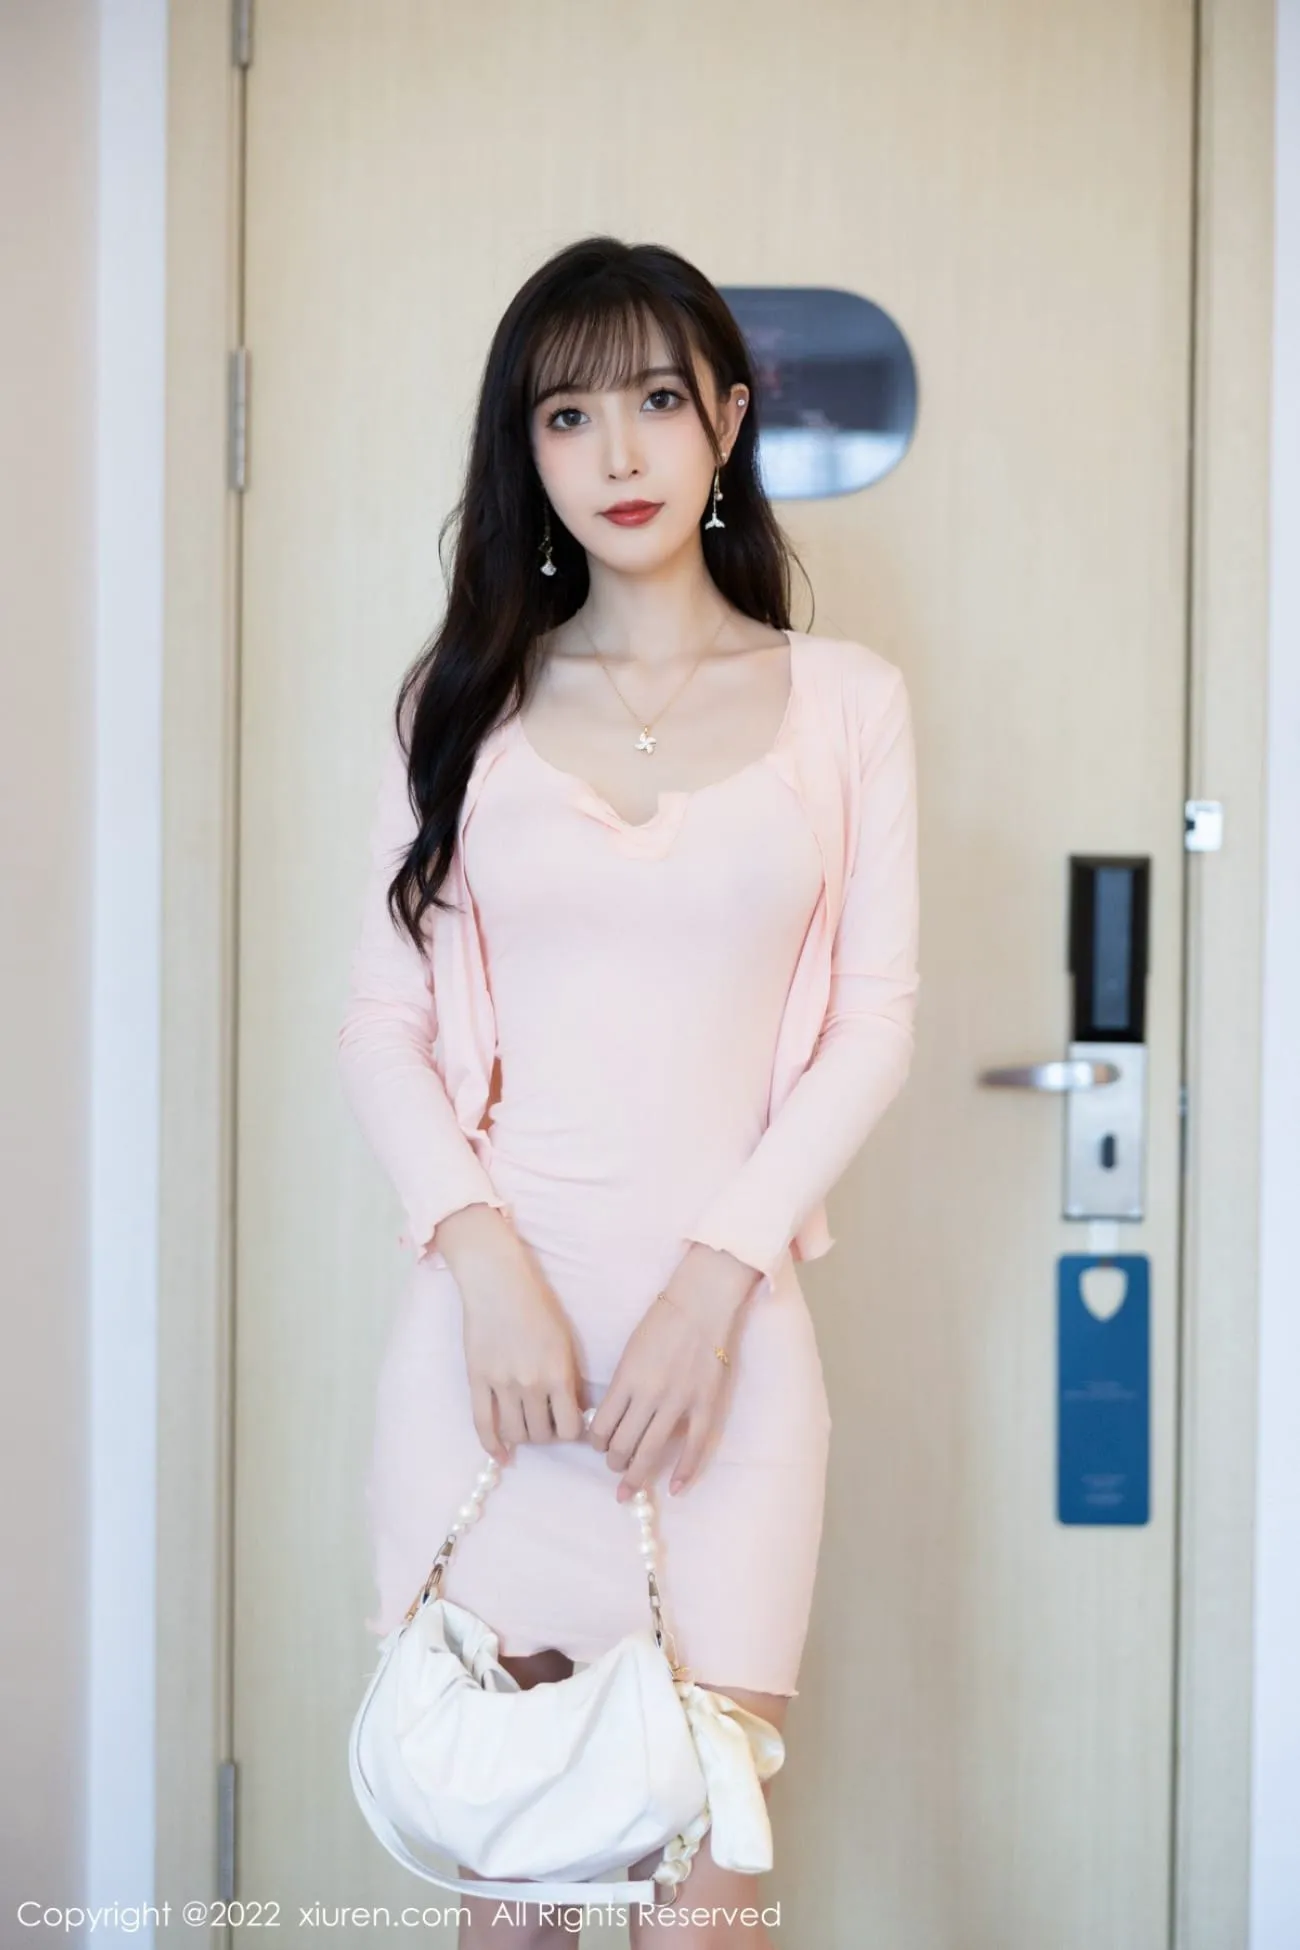 林星阑秀人网粉色服饰搭配高挑身材性感写真